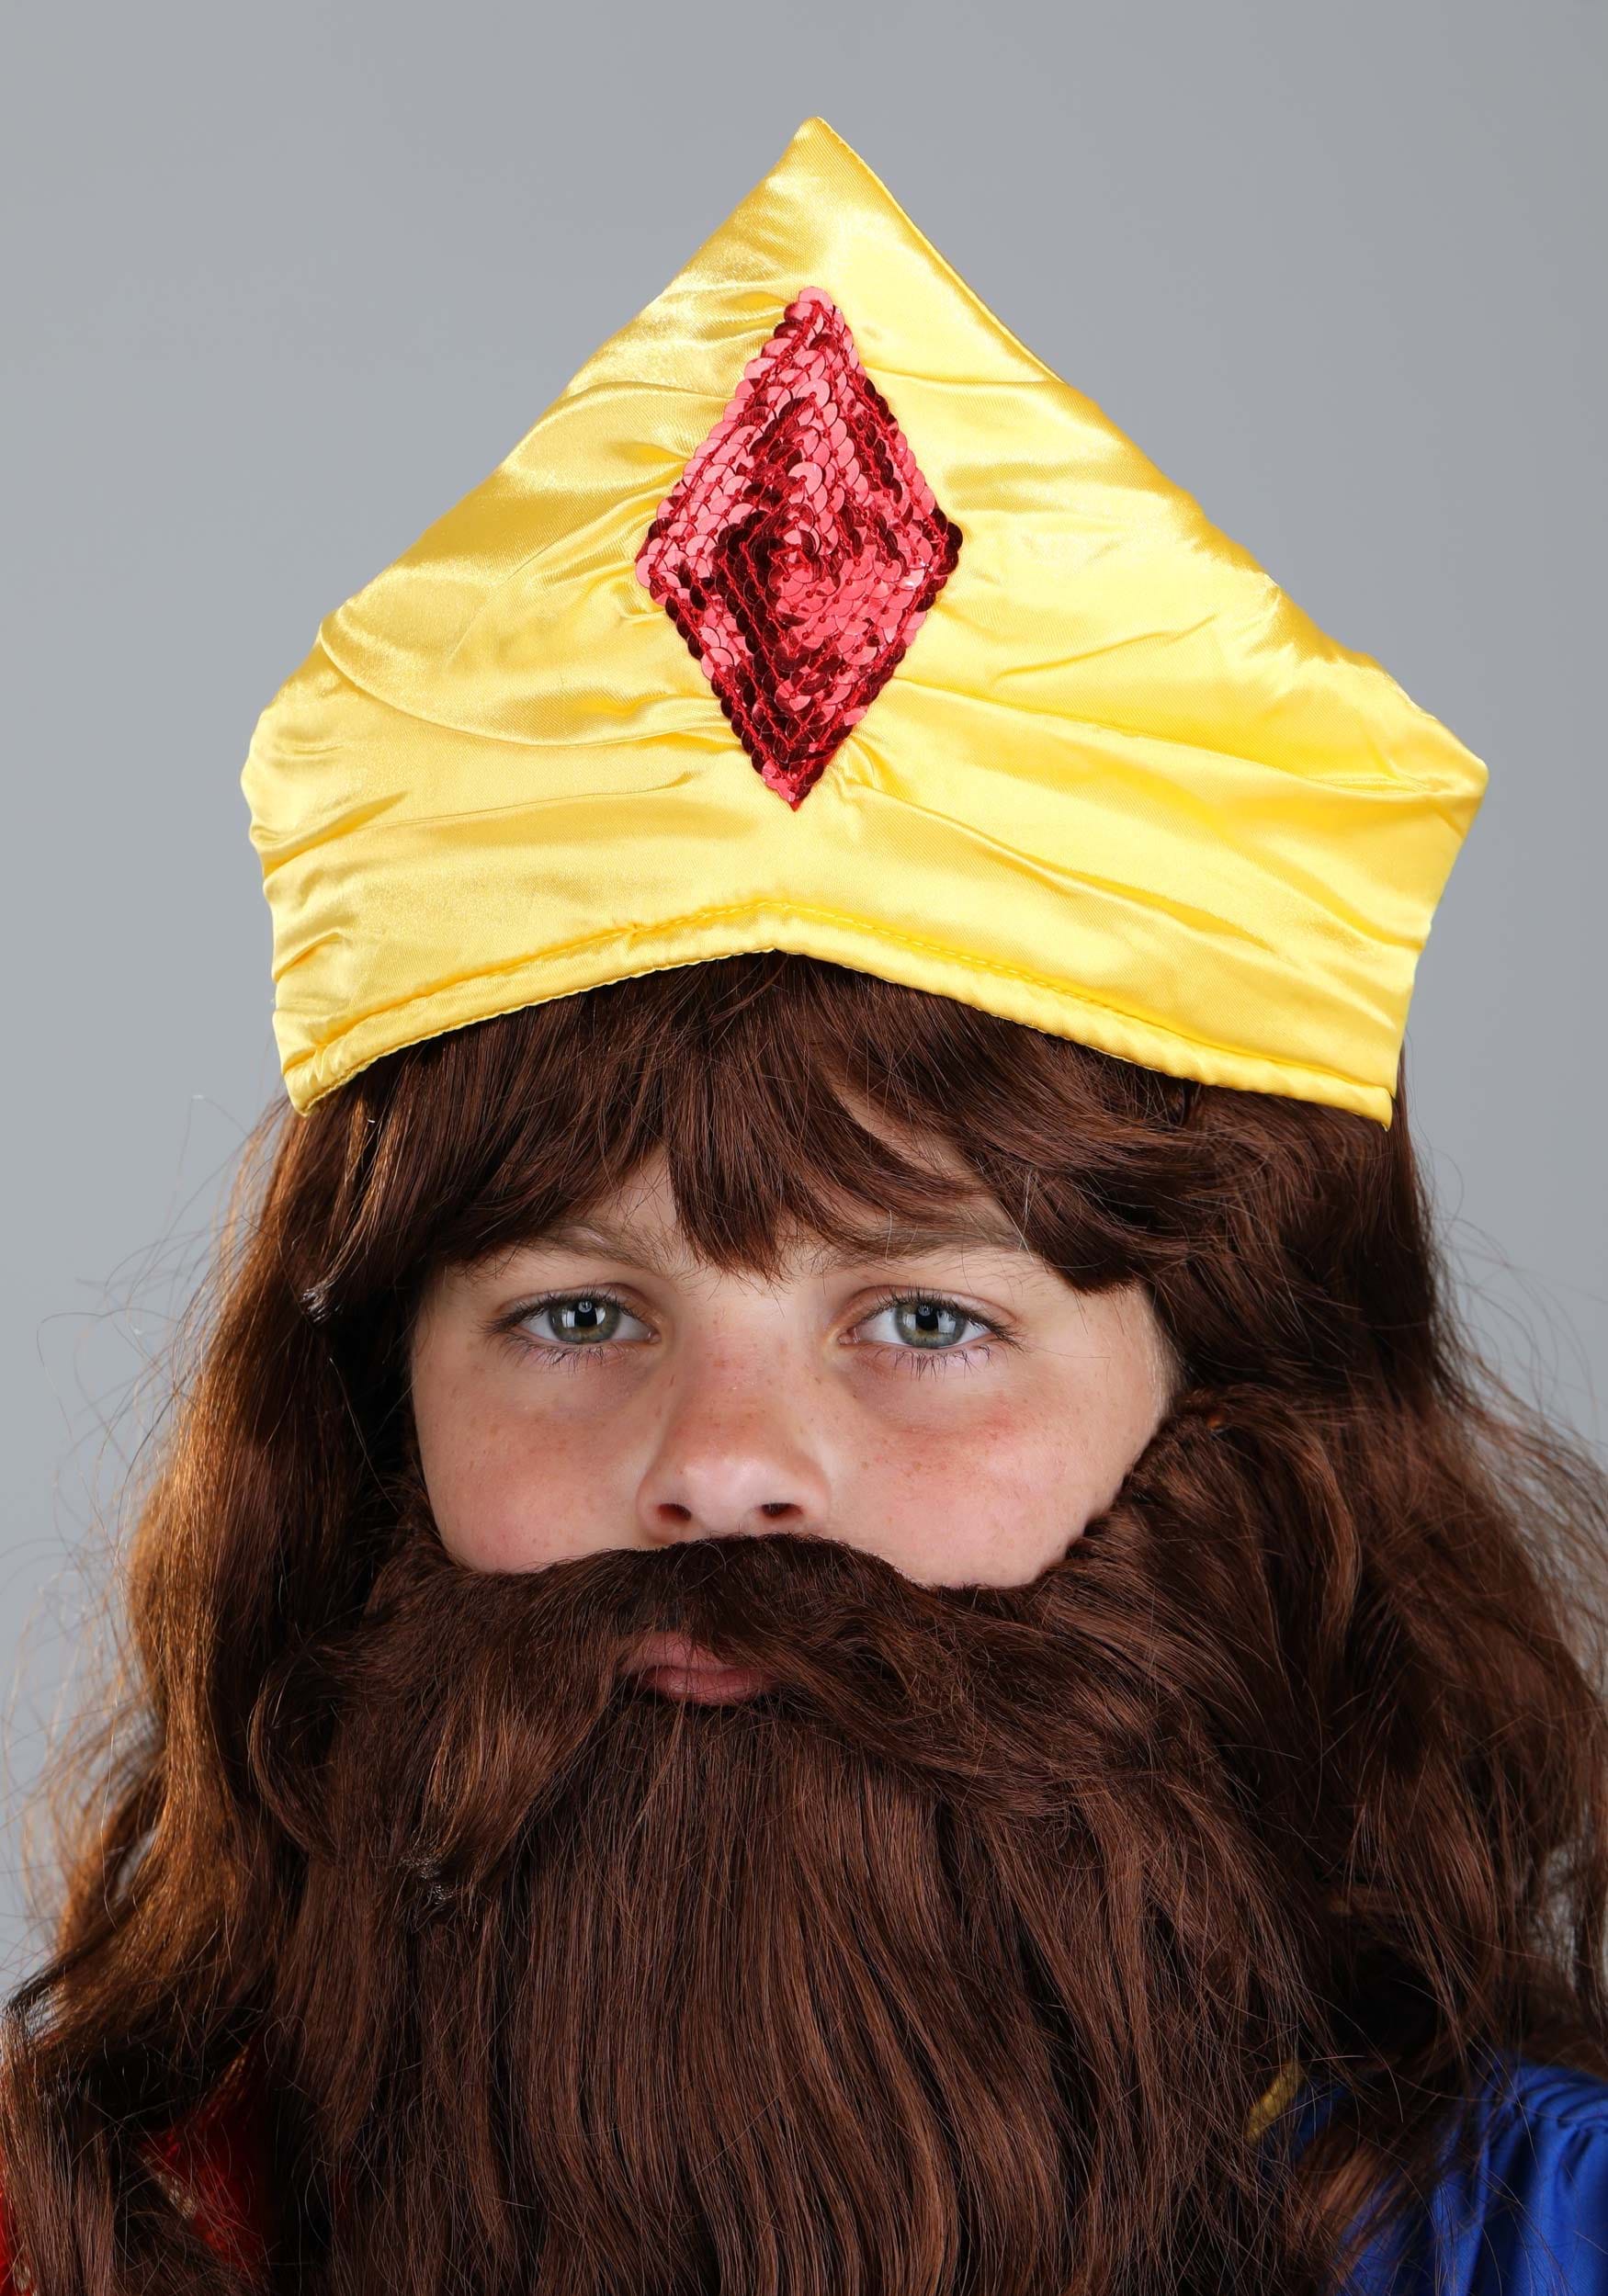 Haman Purim Kid's Costume